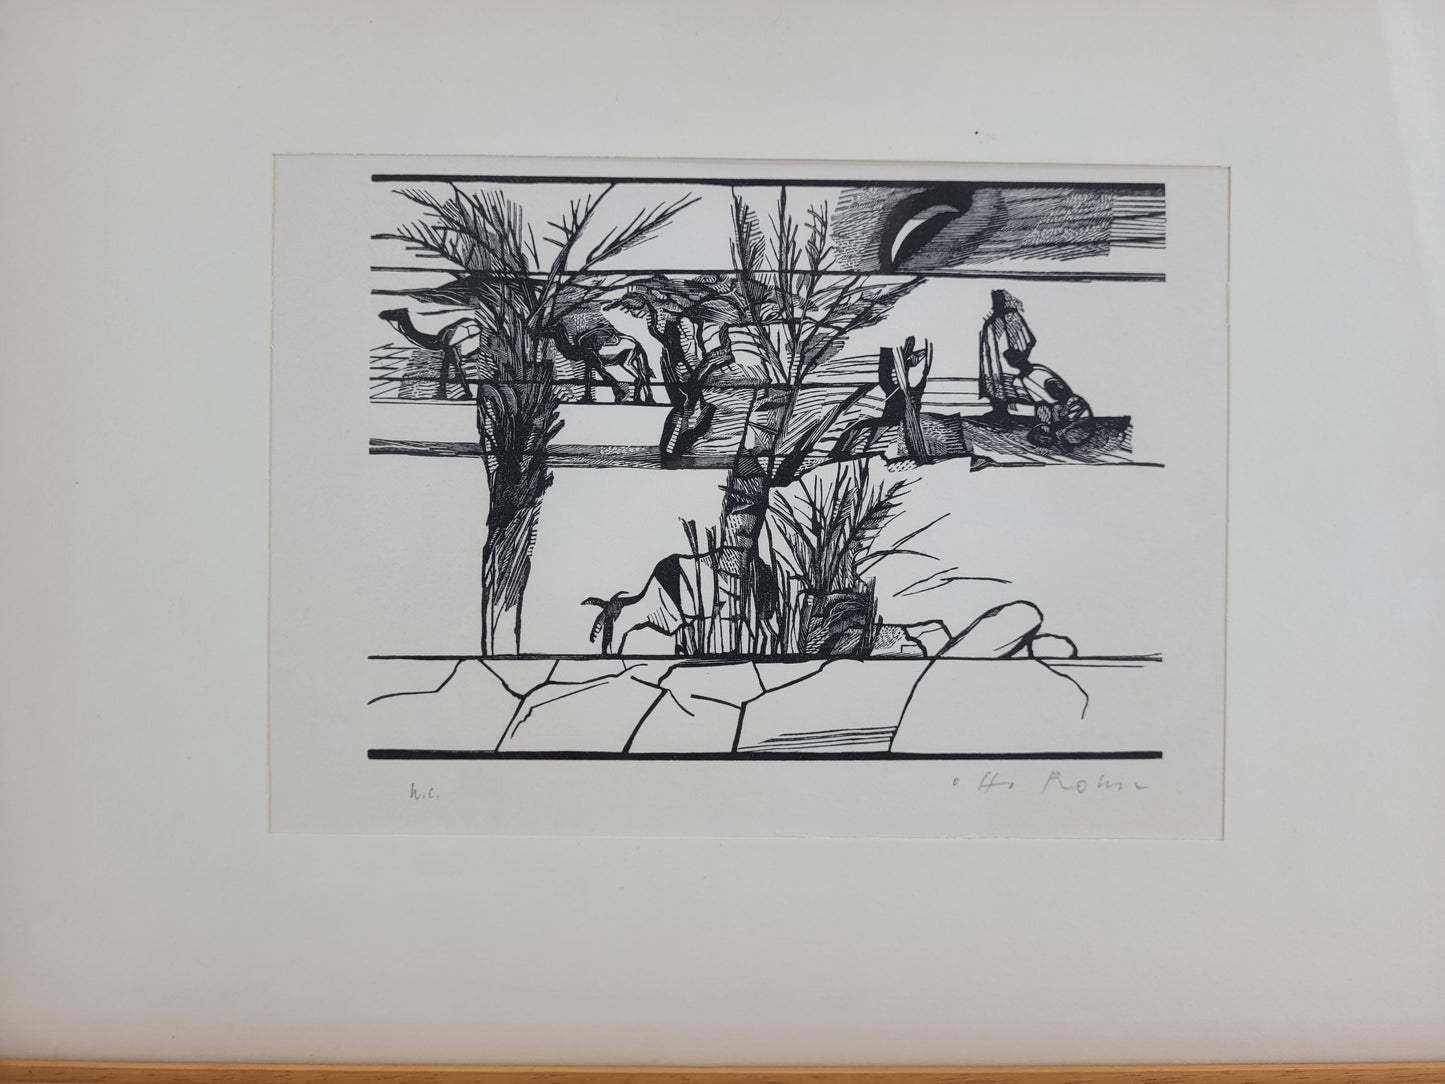 Original Holzschnitt, H.C. Künstlerabzug Handsigniert Oase in der Wüste